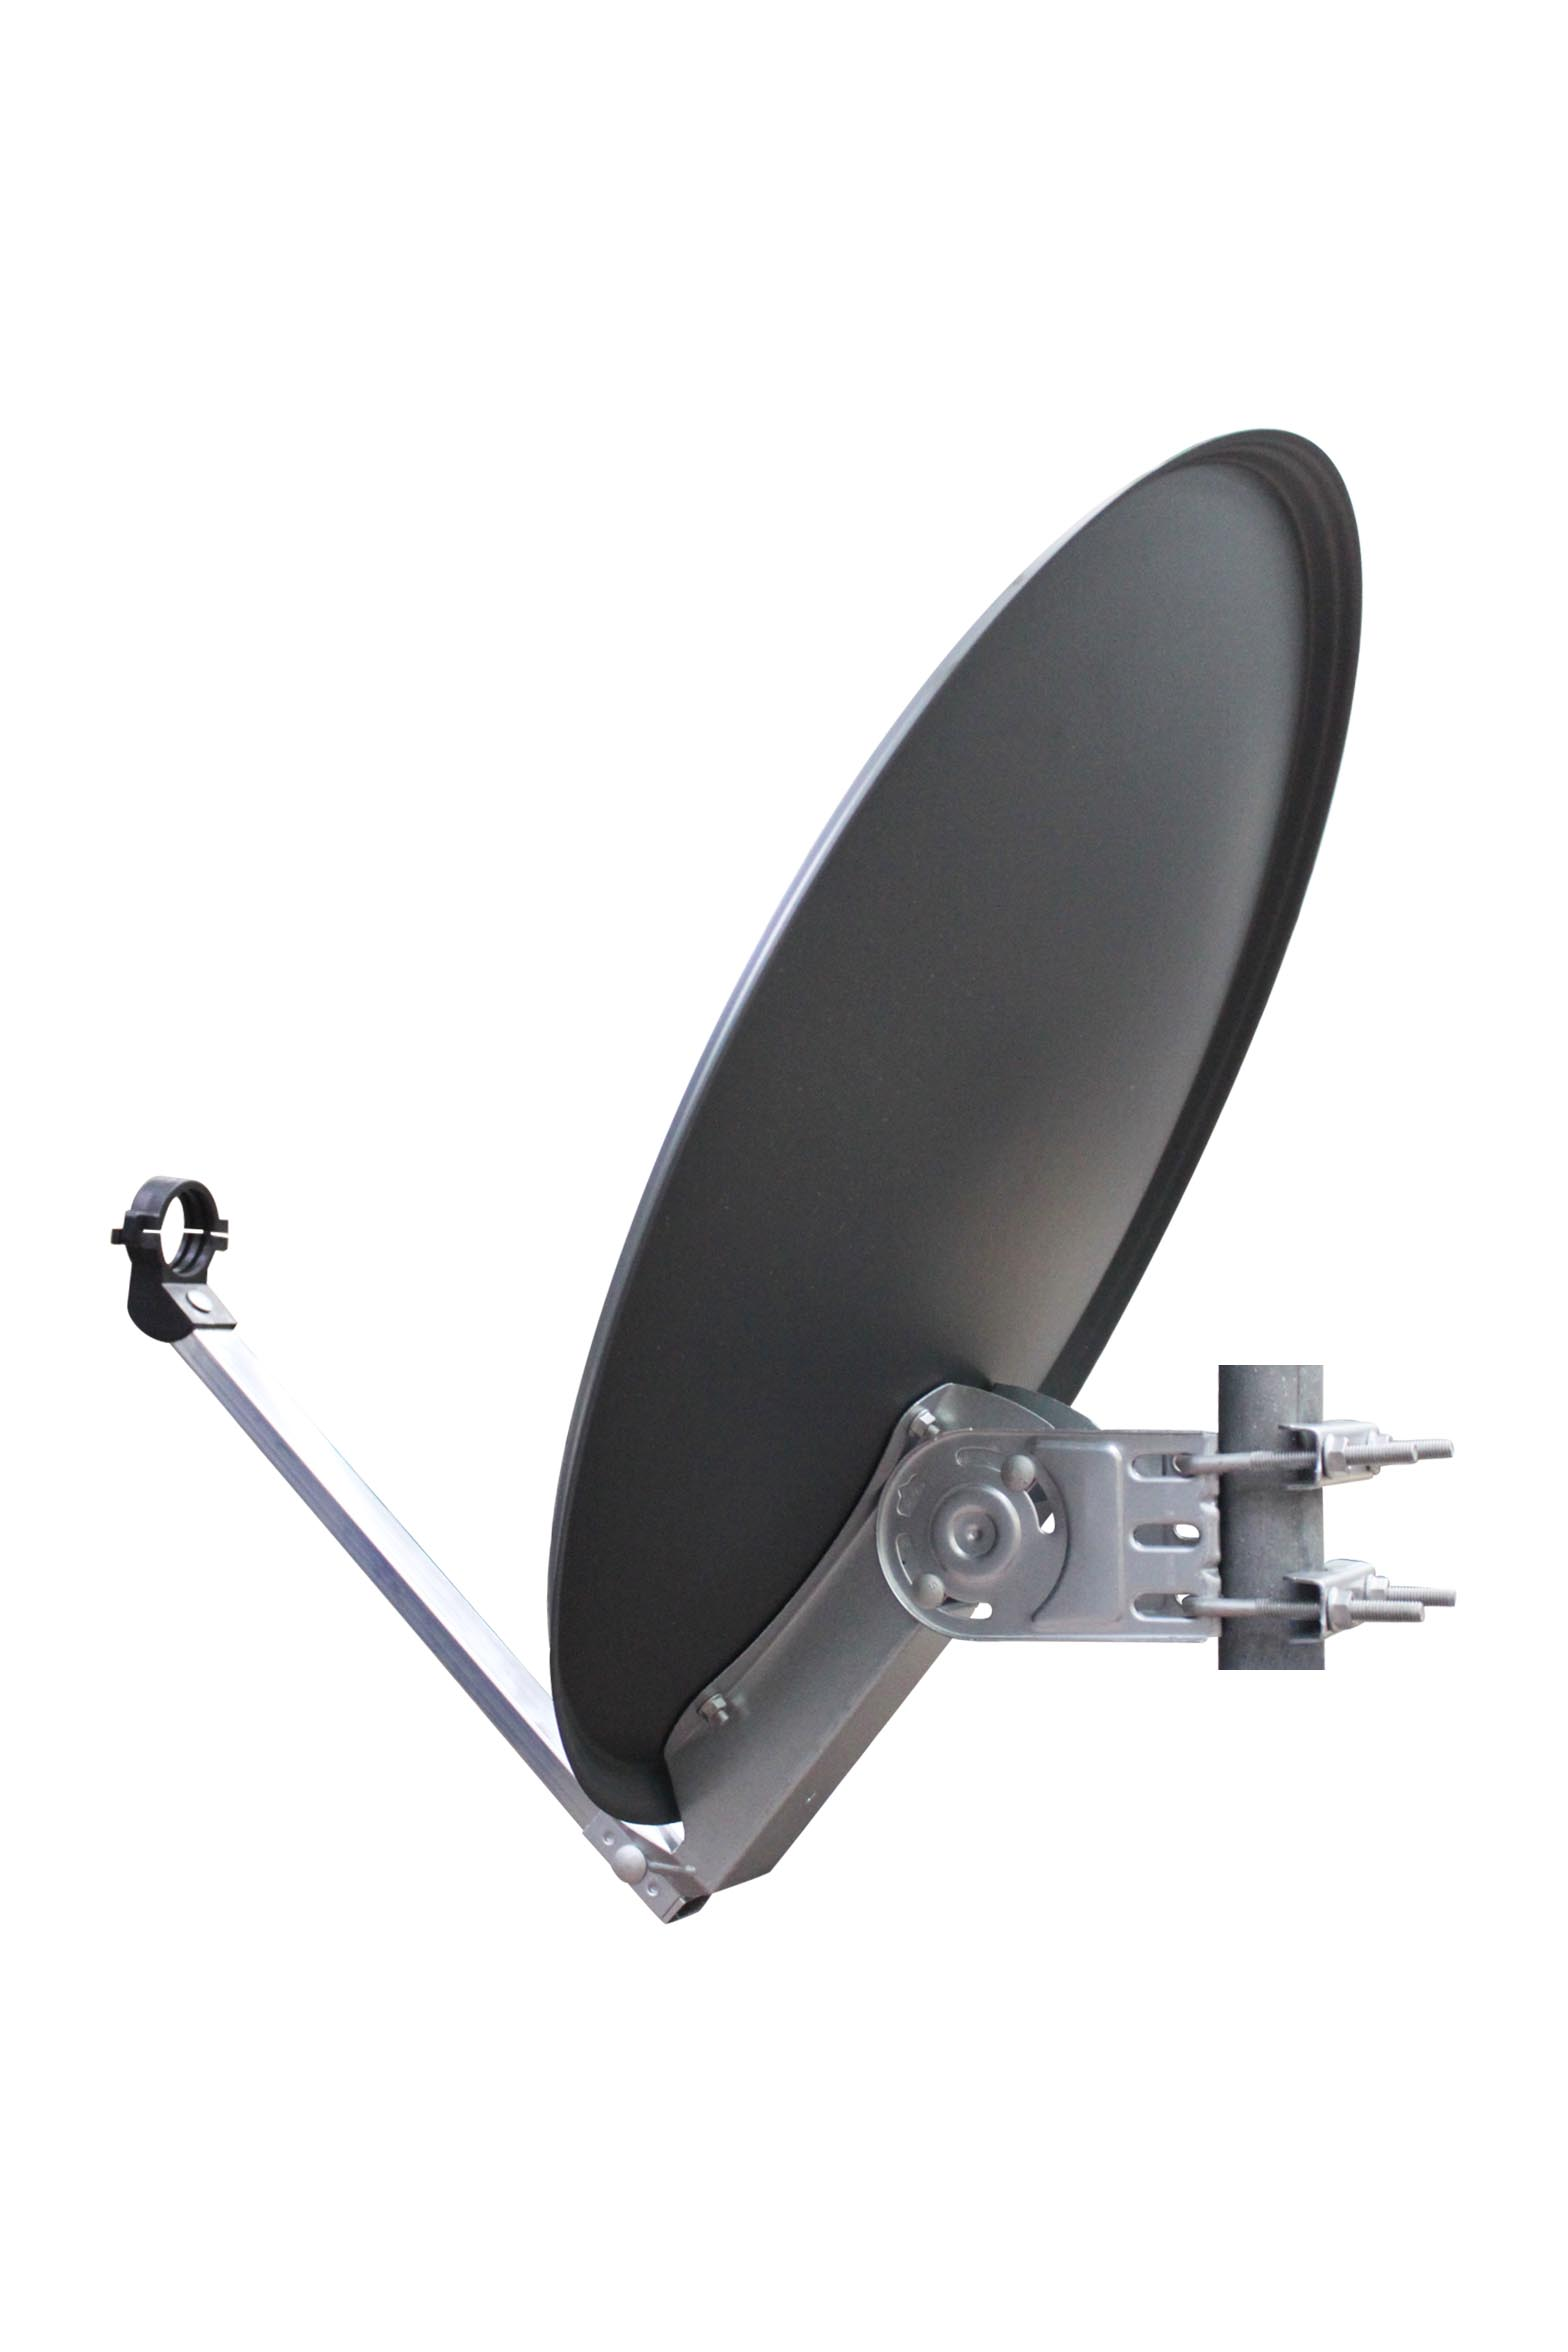 RED OPTICUM Satellitenschüssel 60 anthrazit QA60 - 60cm aus Sat-Antenne Alu Sat-Spiegel -Witterungsbeständige cm Satellitenantenne